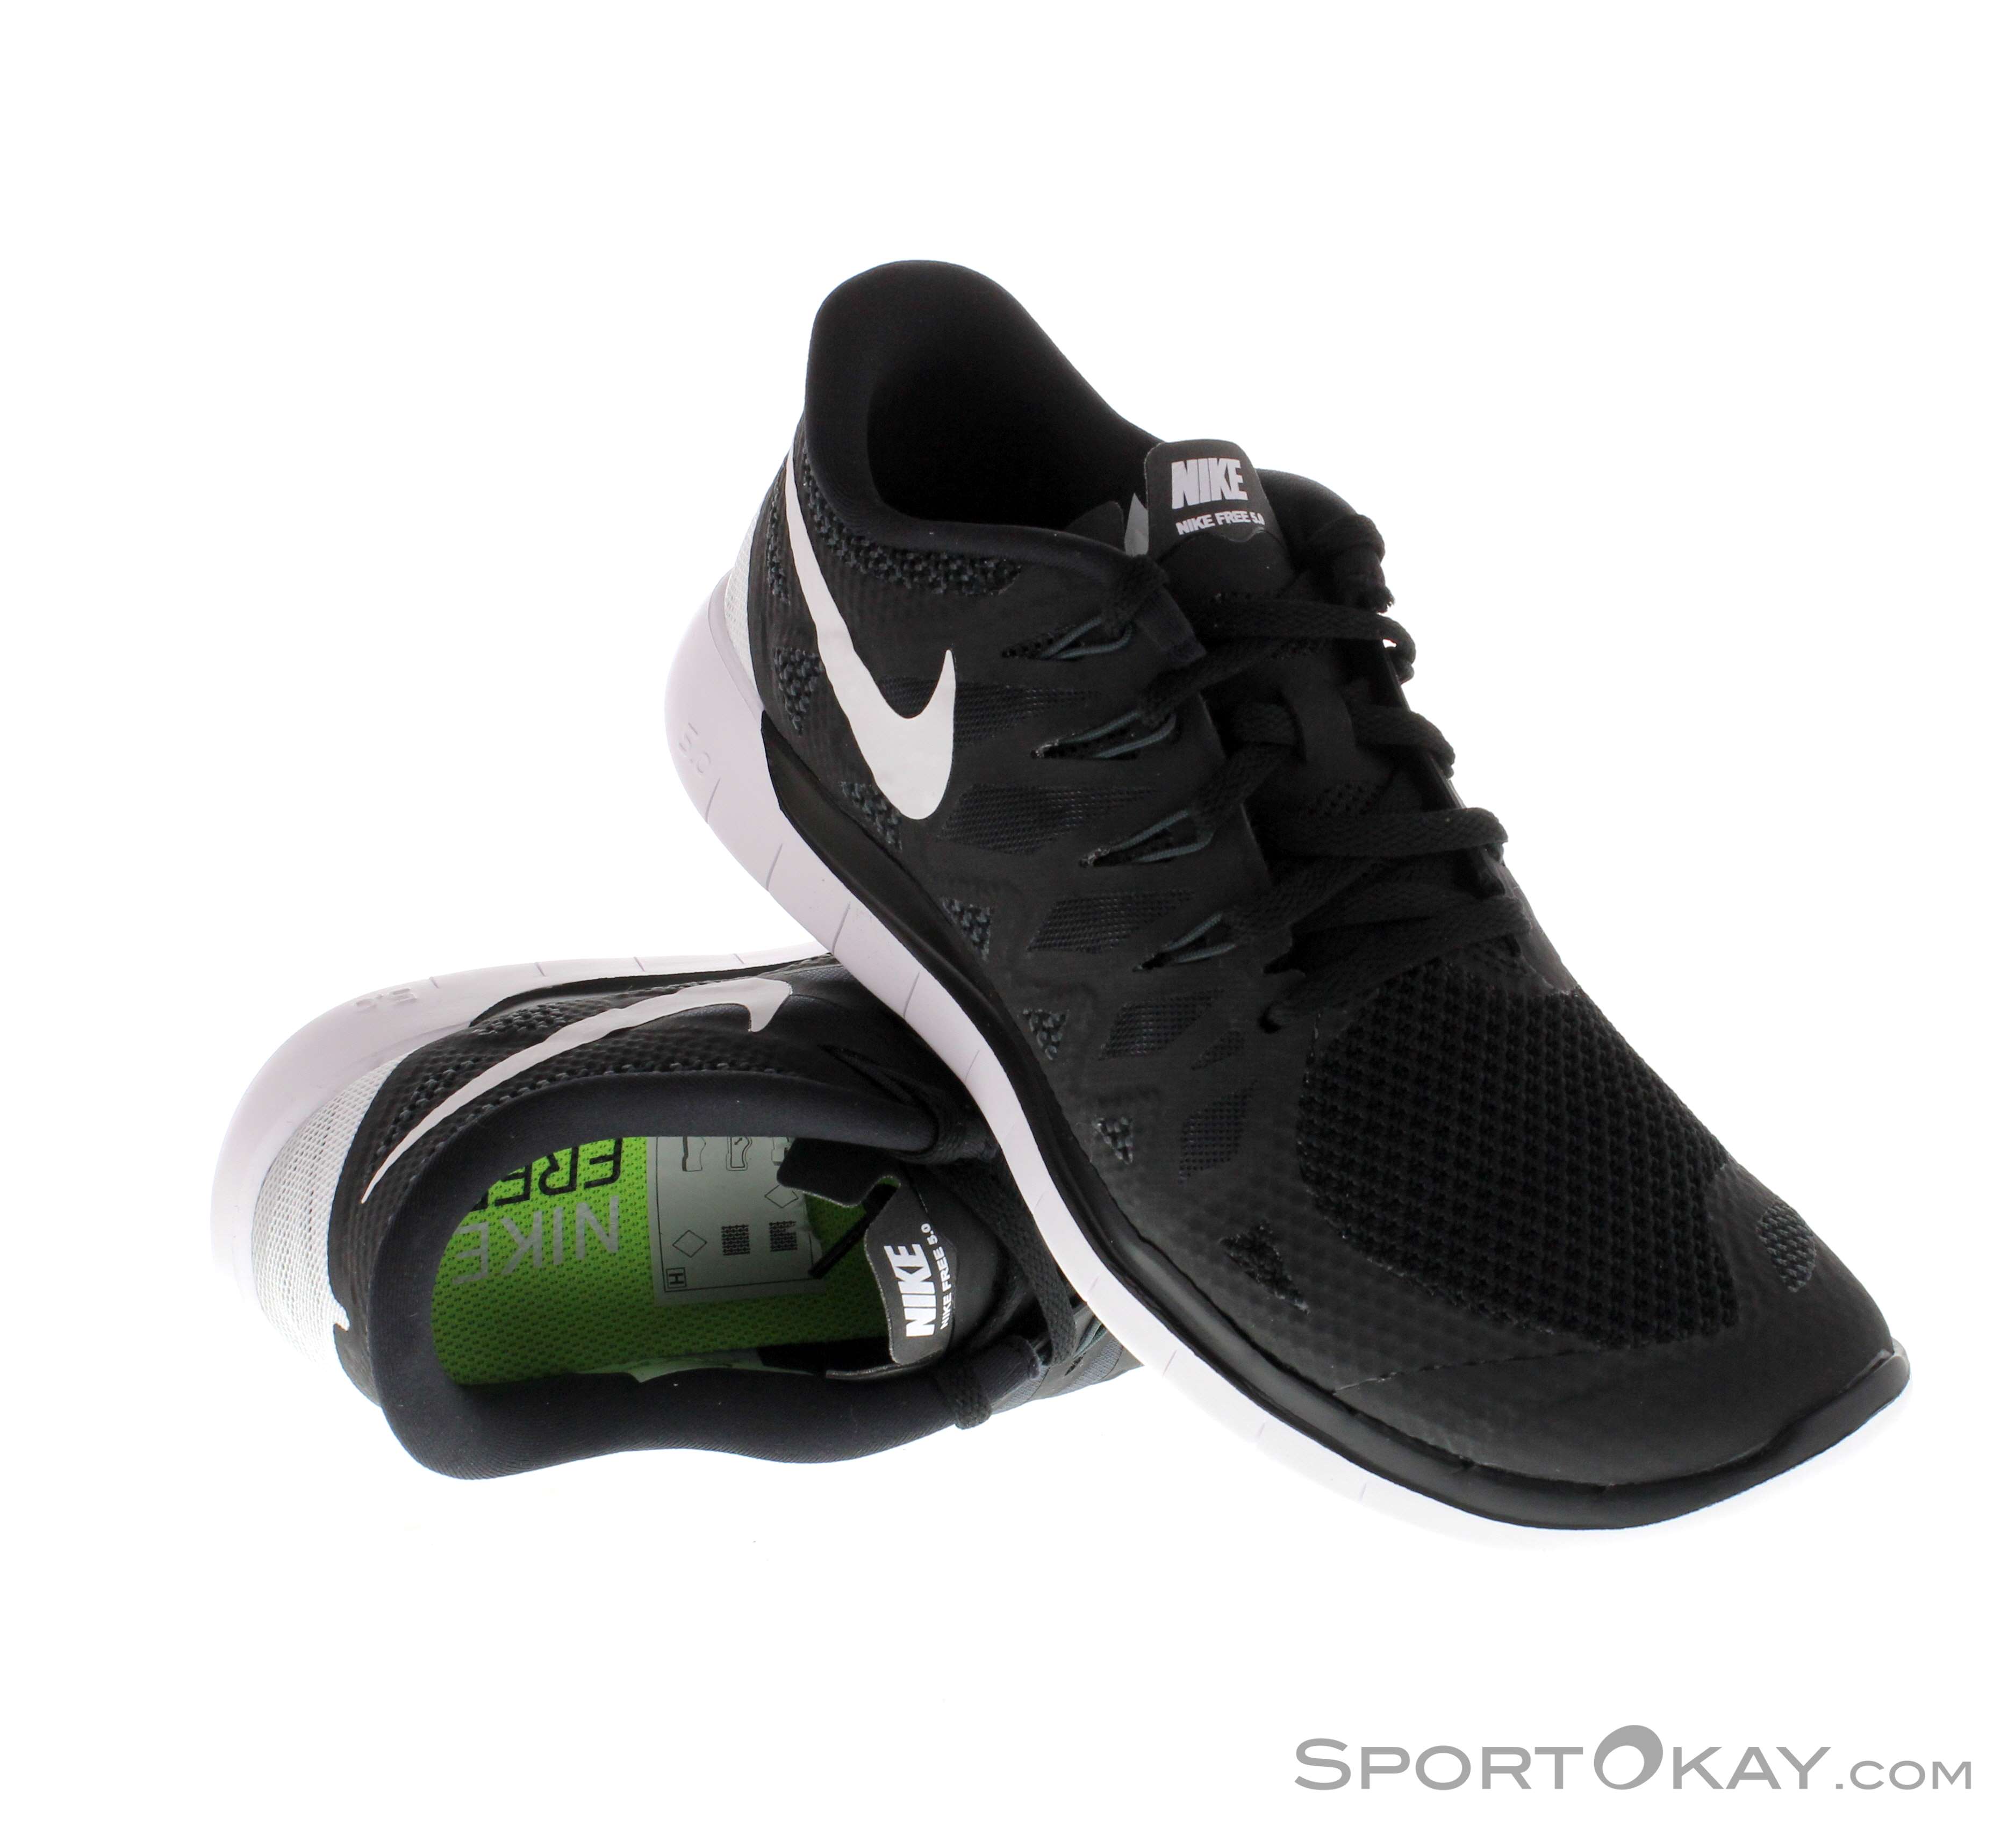 etiqueta Personalmente tema Nike Free 5.0 Herren Laufschuhe - Running Shoes - Running Shoes - Running -  All